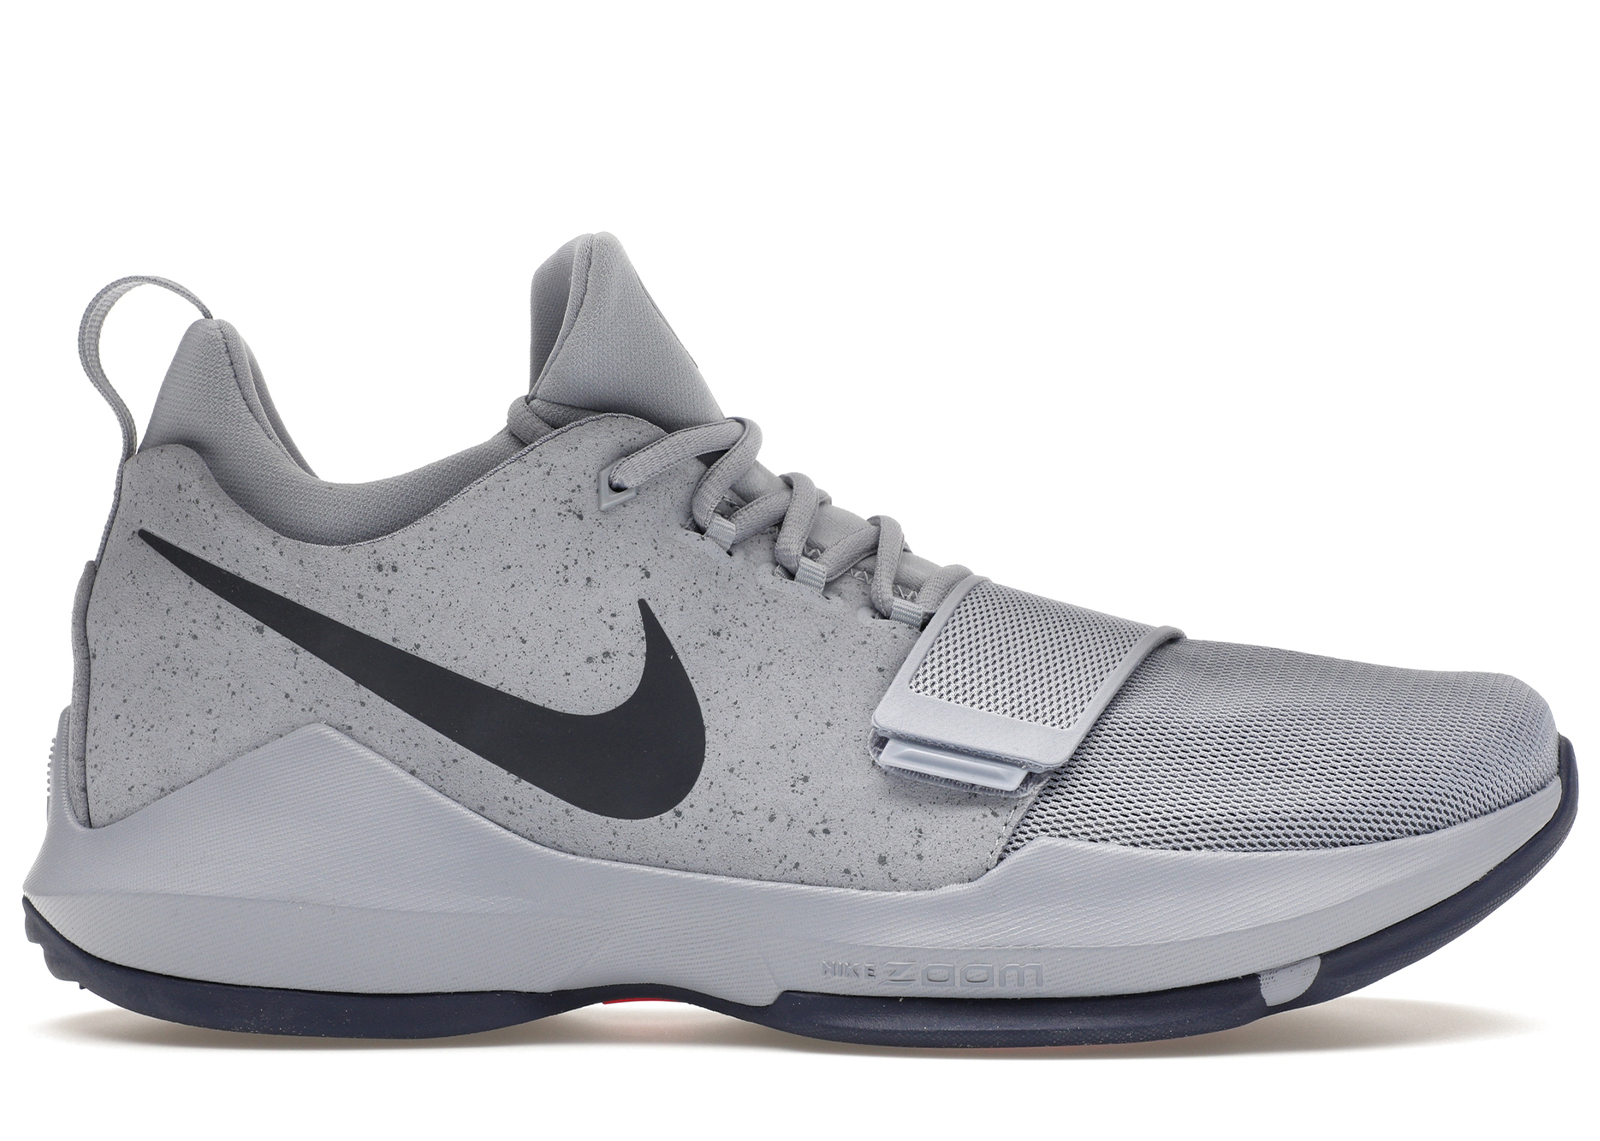 Nike PG 1 Glacier Grey - 878628-044 